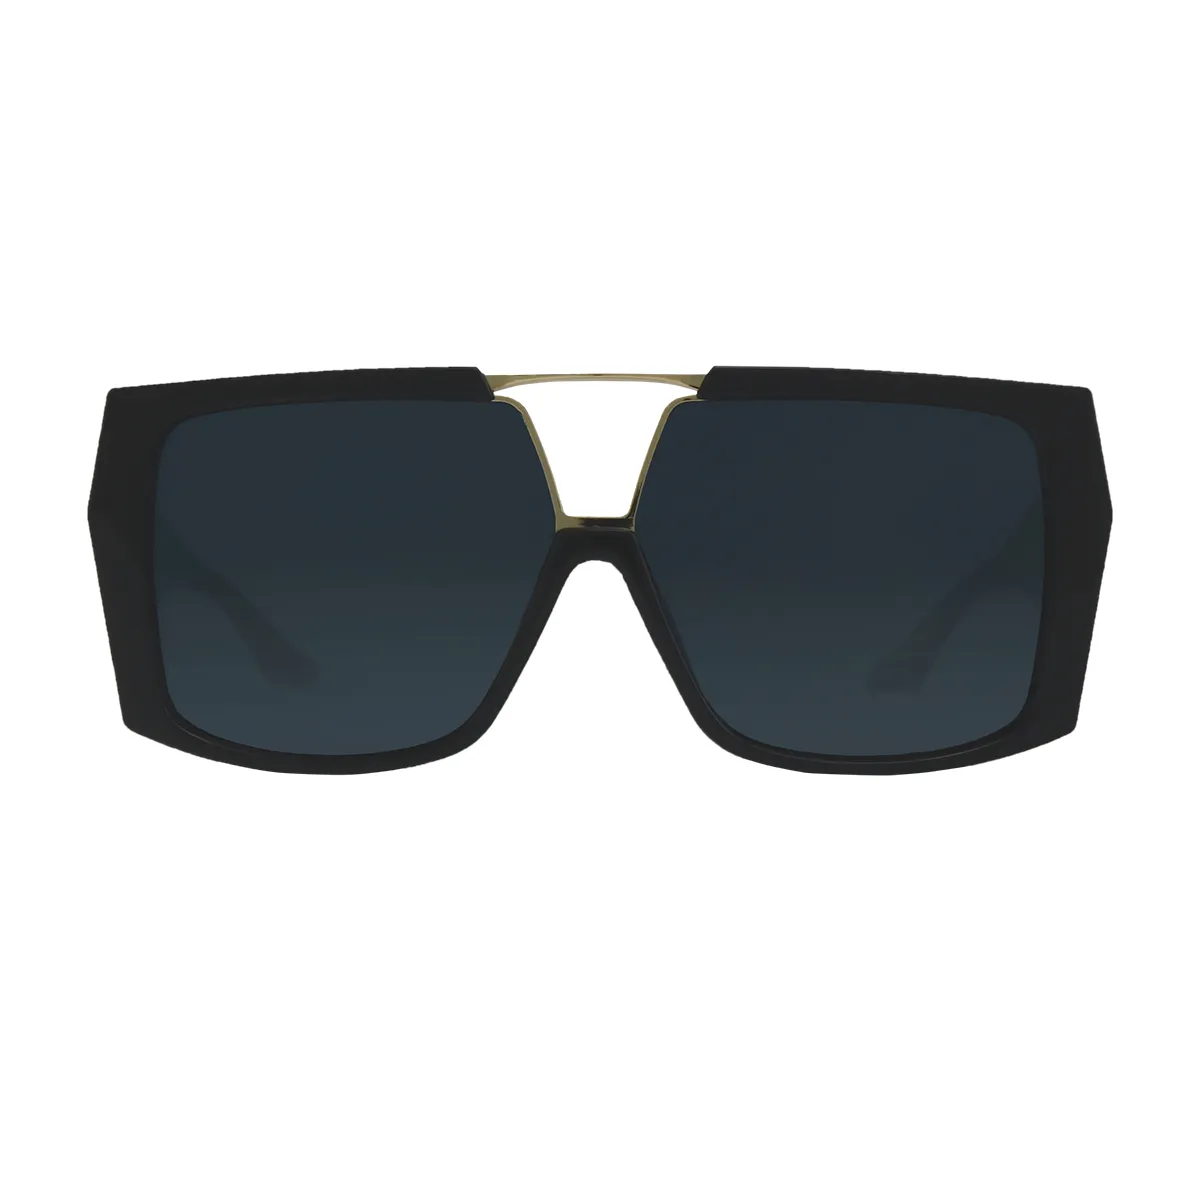 Elliot - glasses Black Sunglasses for Men & Women